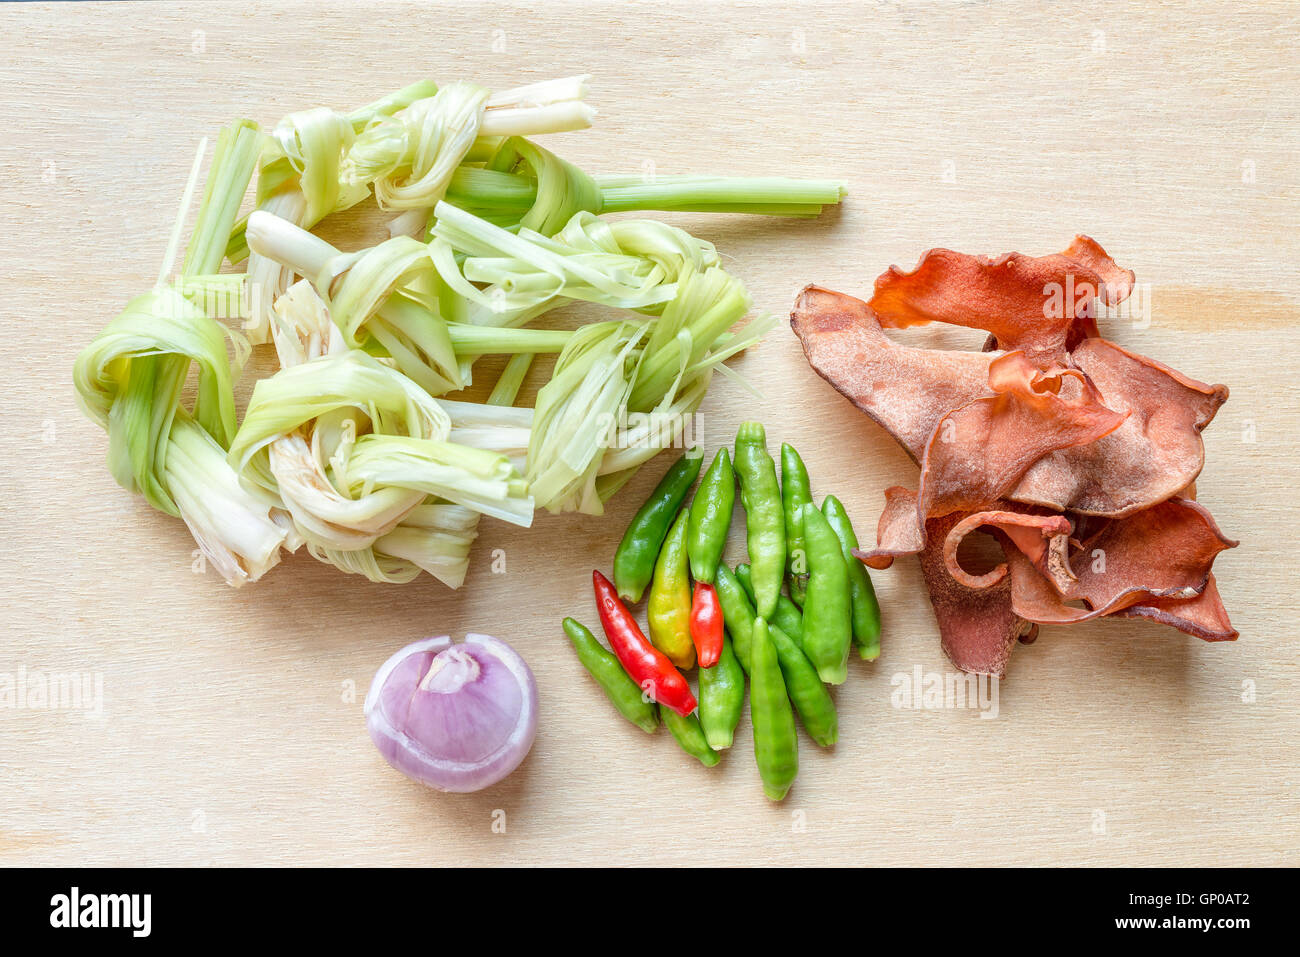 Standard-pflanzliche Zutaten für Thai-scharf-Suppe, saure Suppe, Curry. Draufsicht auf Holzutensilien. Stockfoto